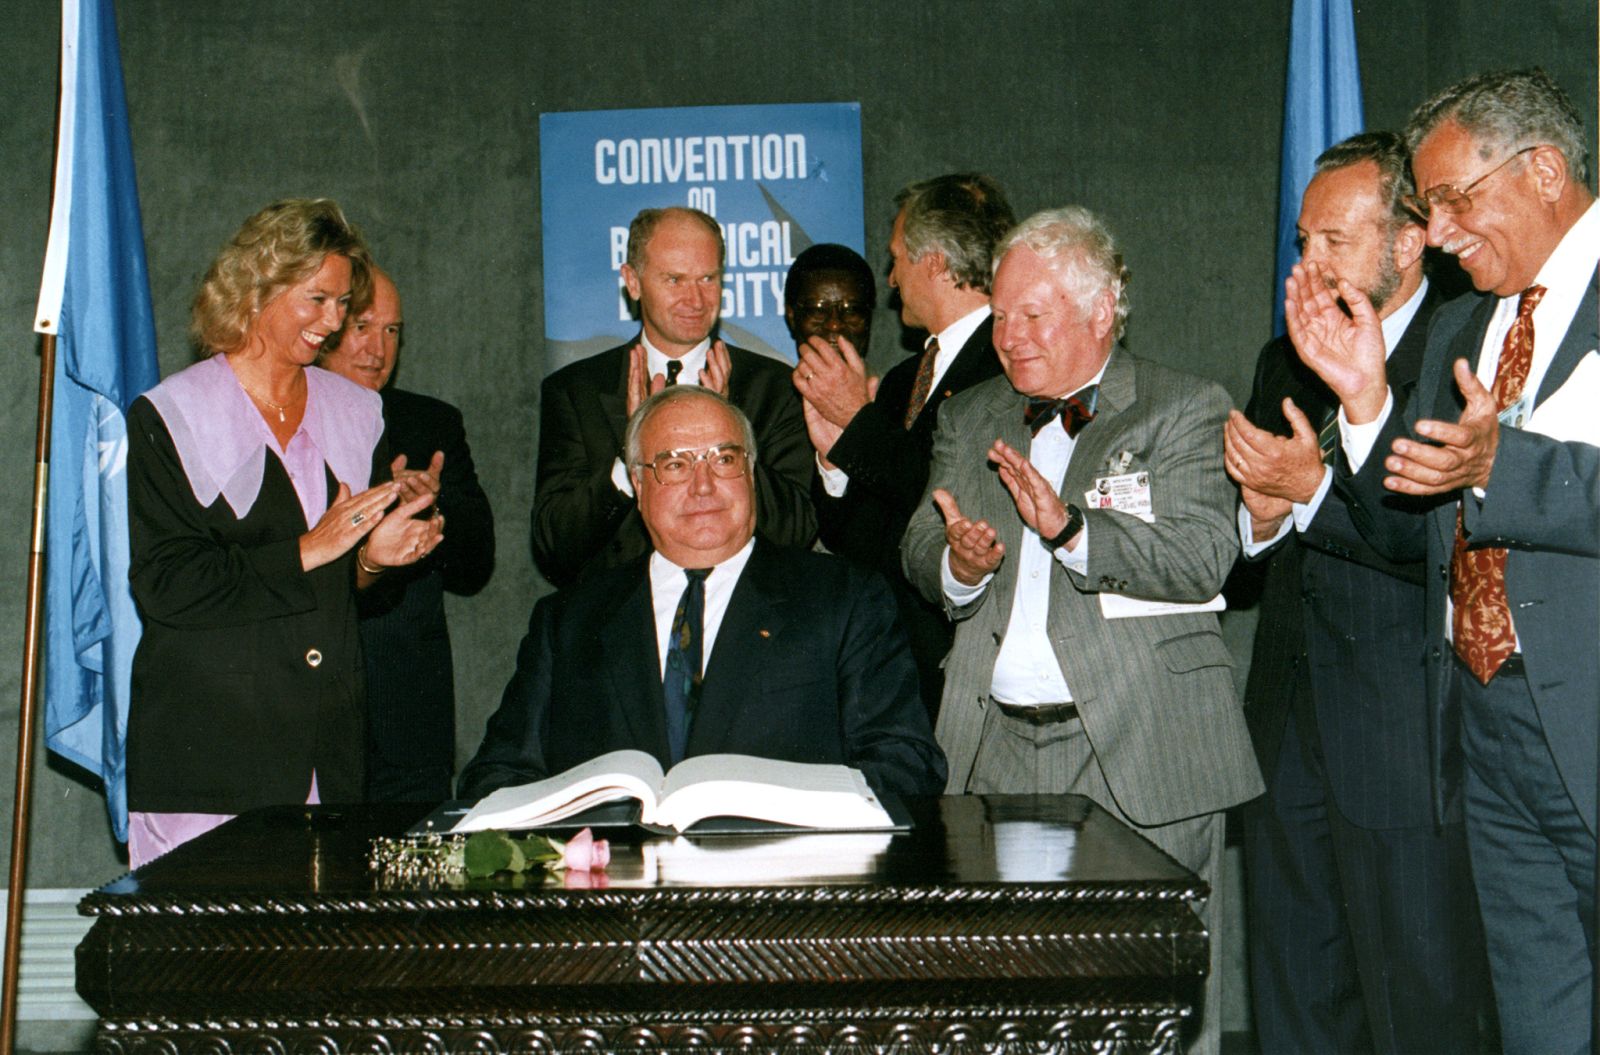 Applaus für den damaligen deutschen Kanzler Helmut Kohl nach Unterzeichnung des Übereinkommens über die biologische Vielfalt in Rio 1992.